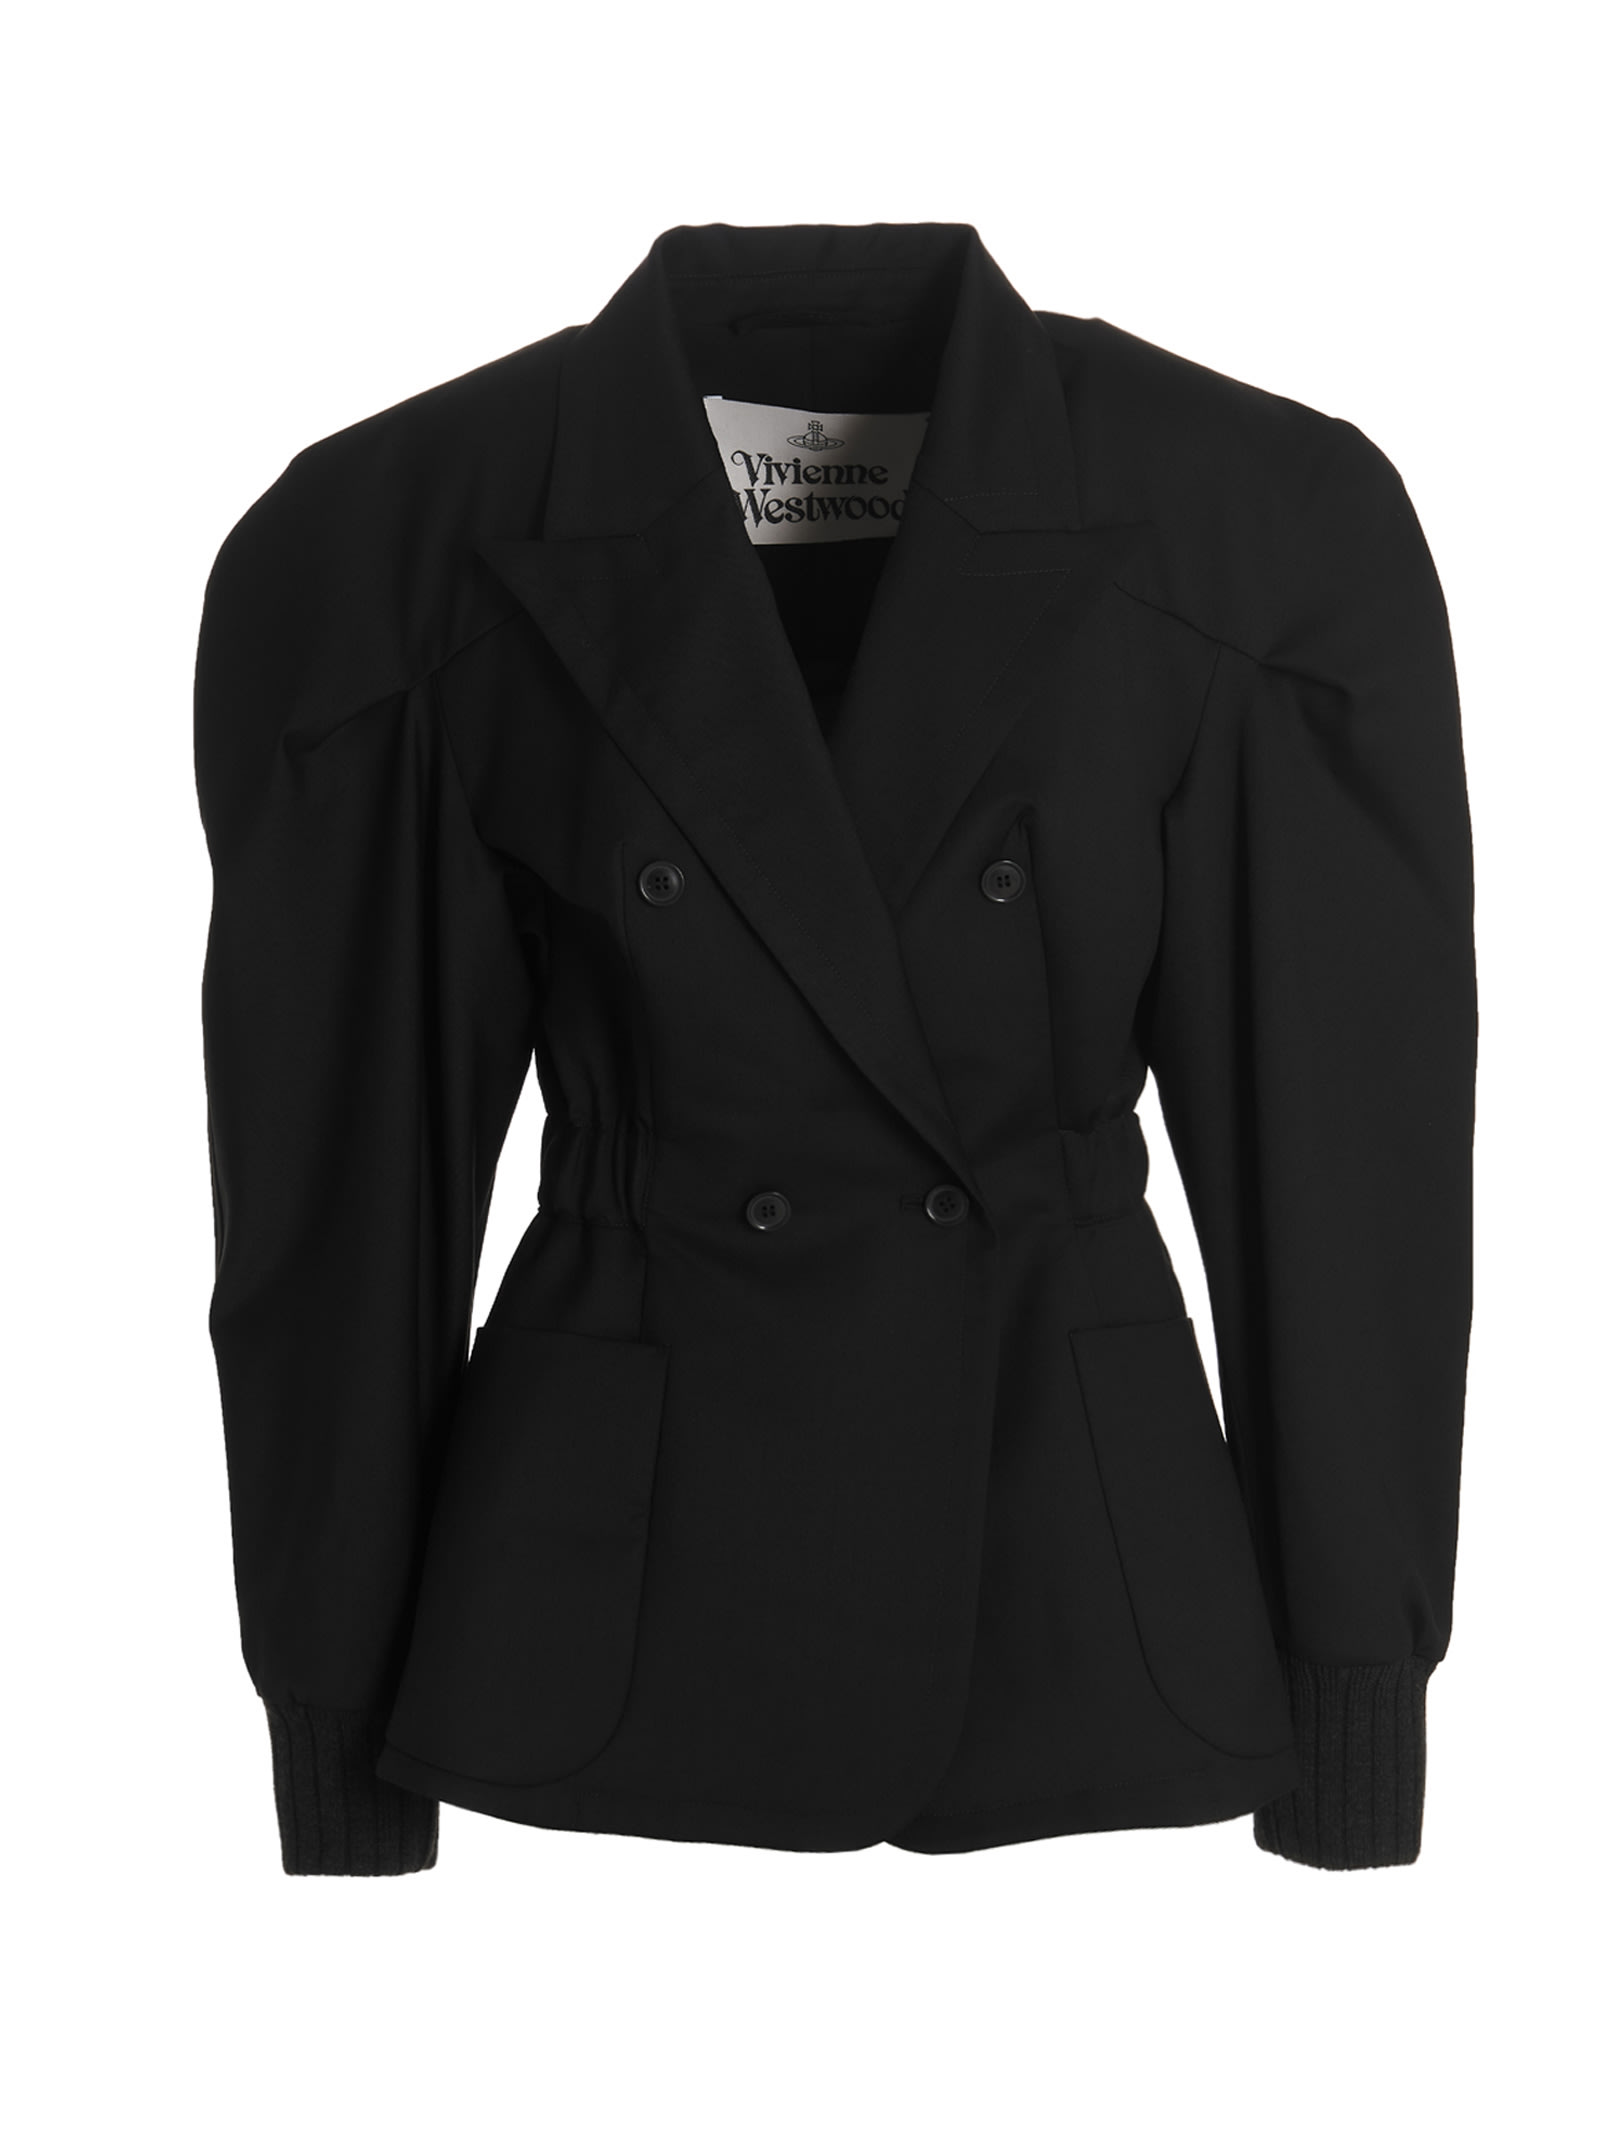 Vivienne Westwood spontanea Blazer Jacket